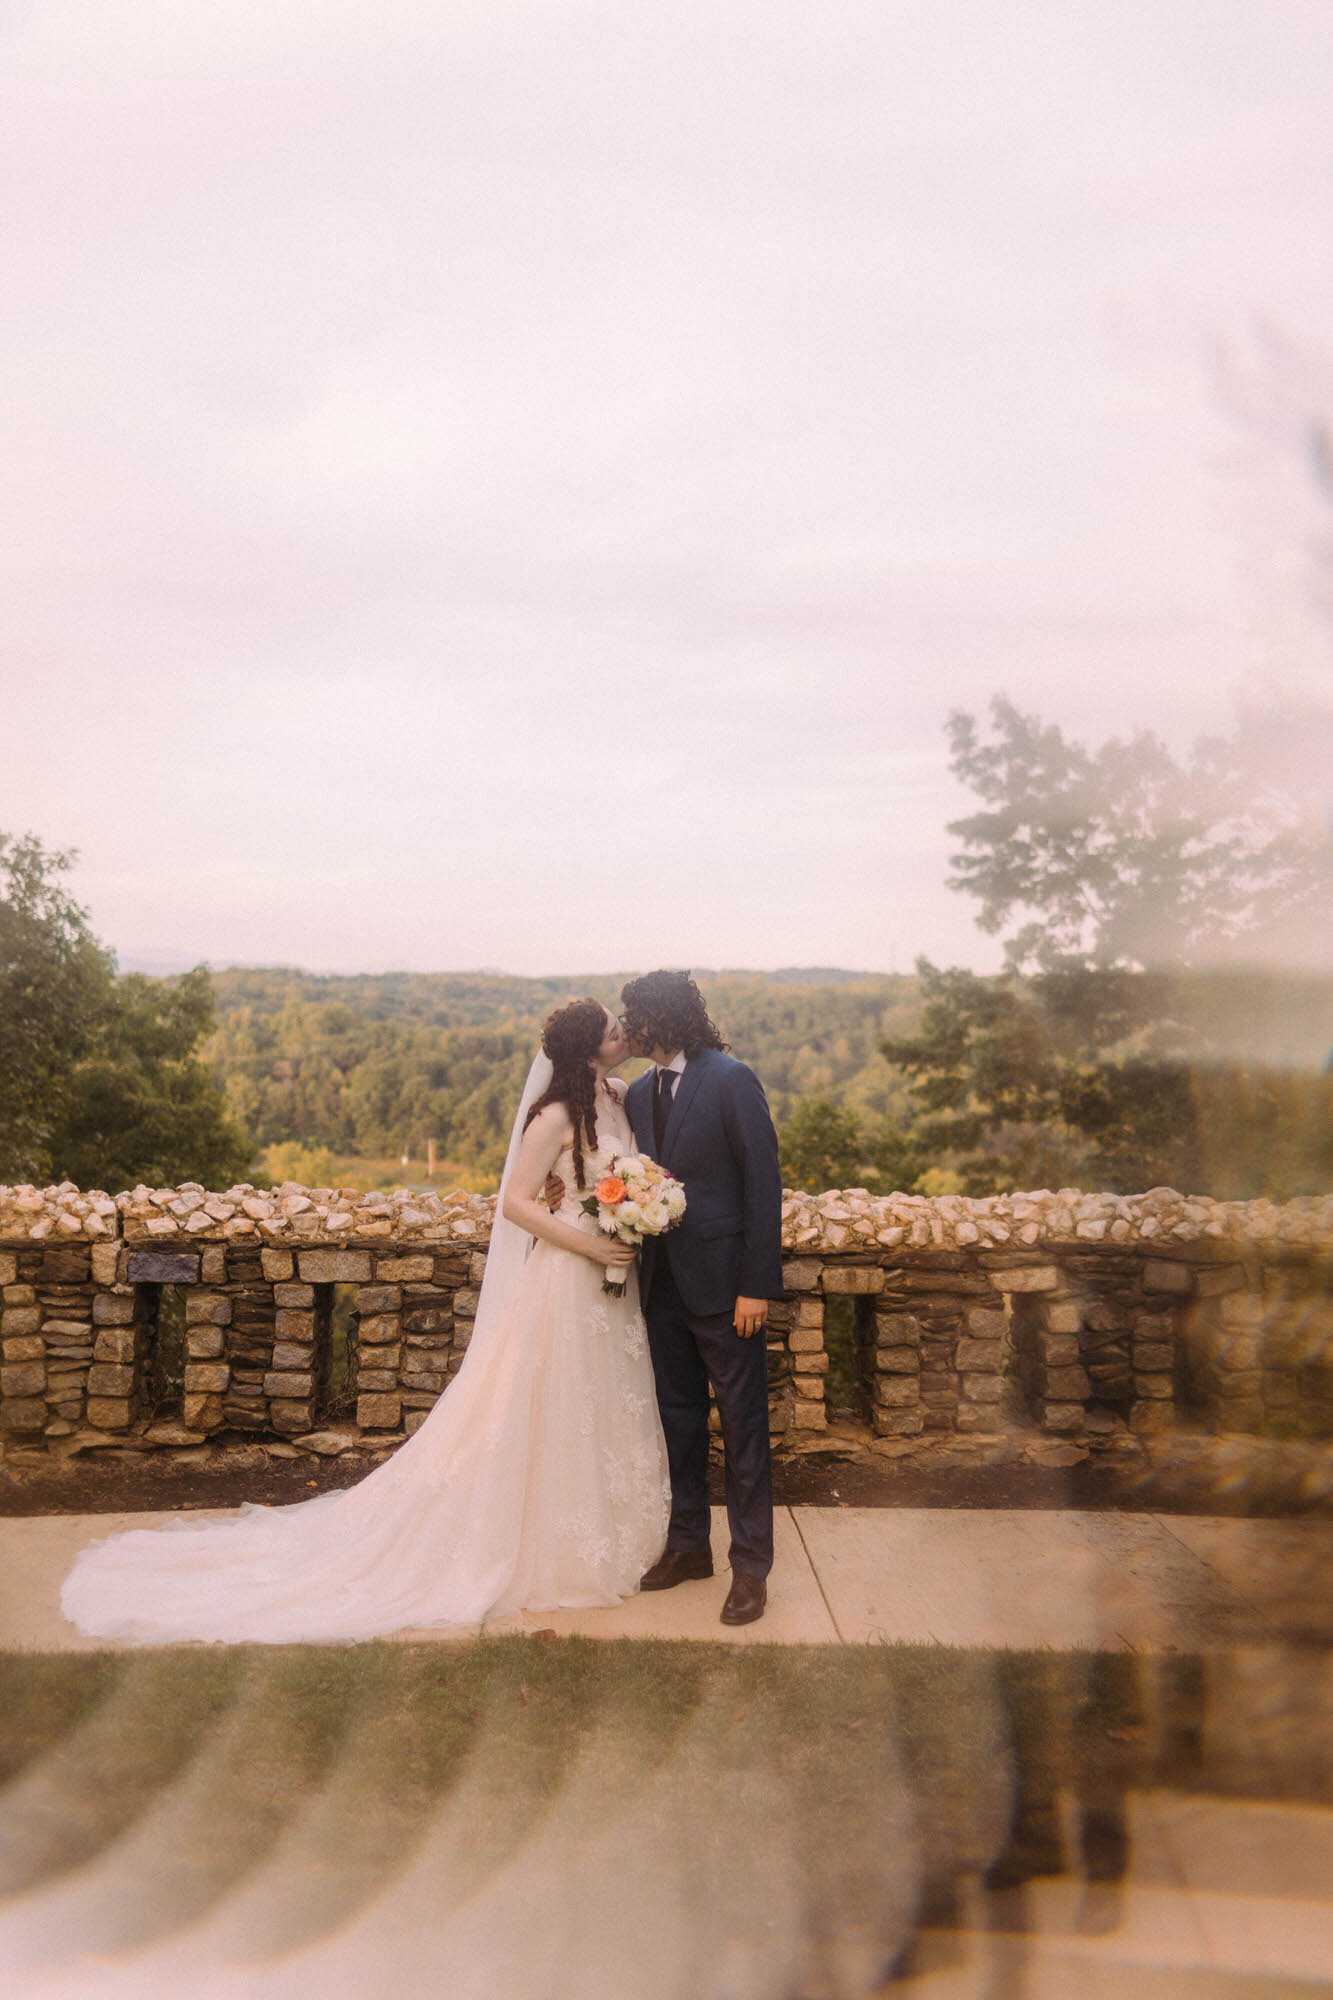 Hannah & Ryan - Virginia Wedding Photographer - Amative Creative-327